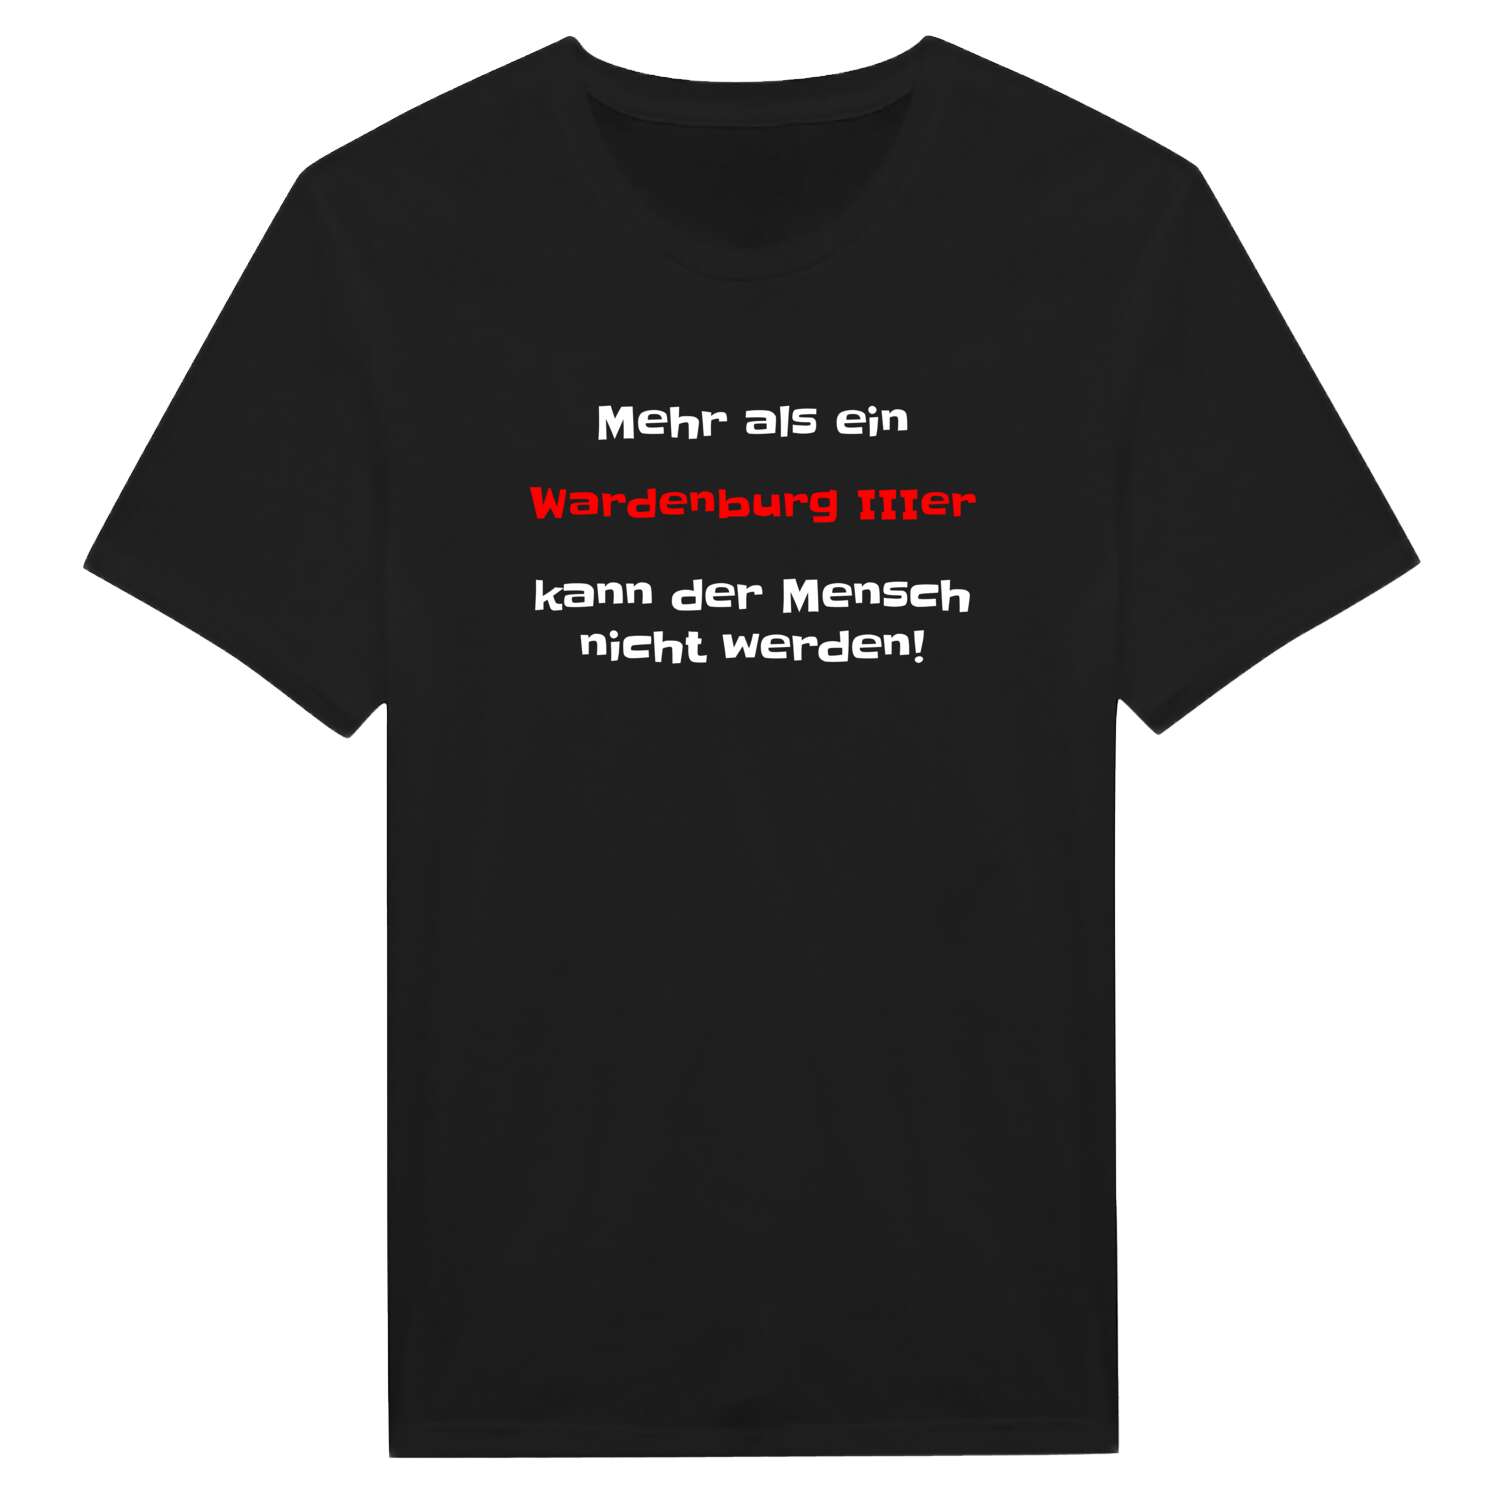 Wardenburg III T-Shirt »Mehr als ein«